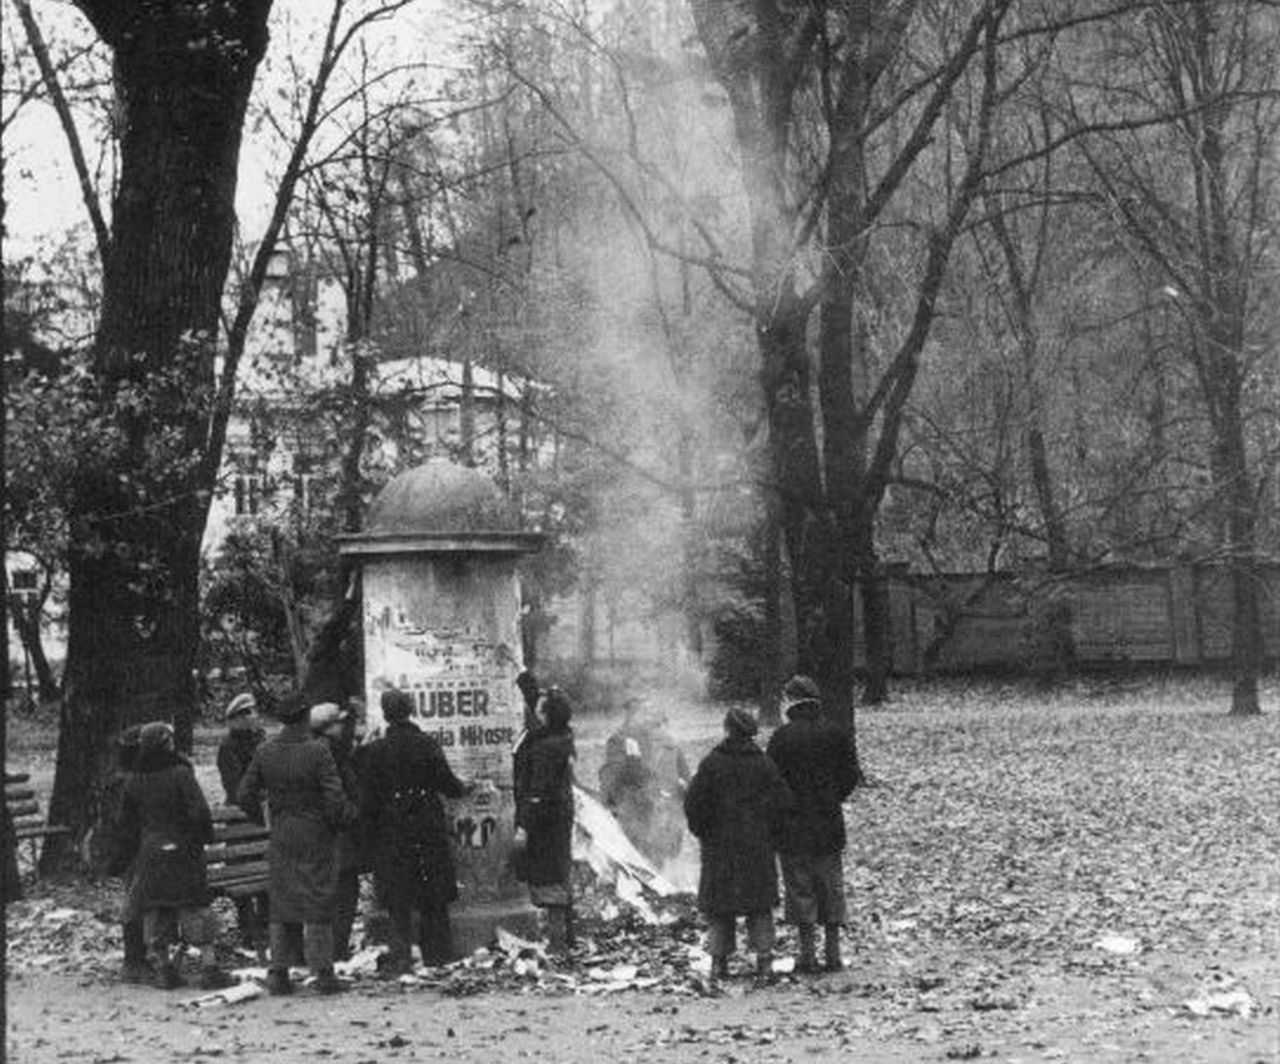 Студенты сдирают и сжигают афиши и плакаты на польском языке с рекламной тумбы в Вильнюсе. 1939 г.